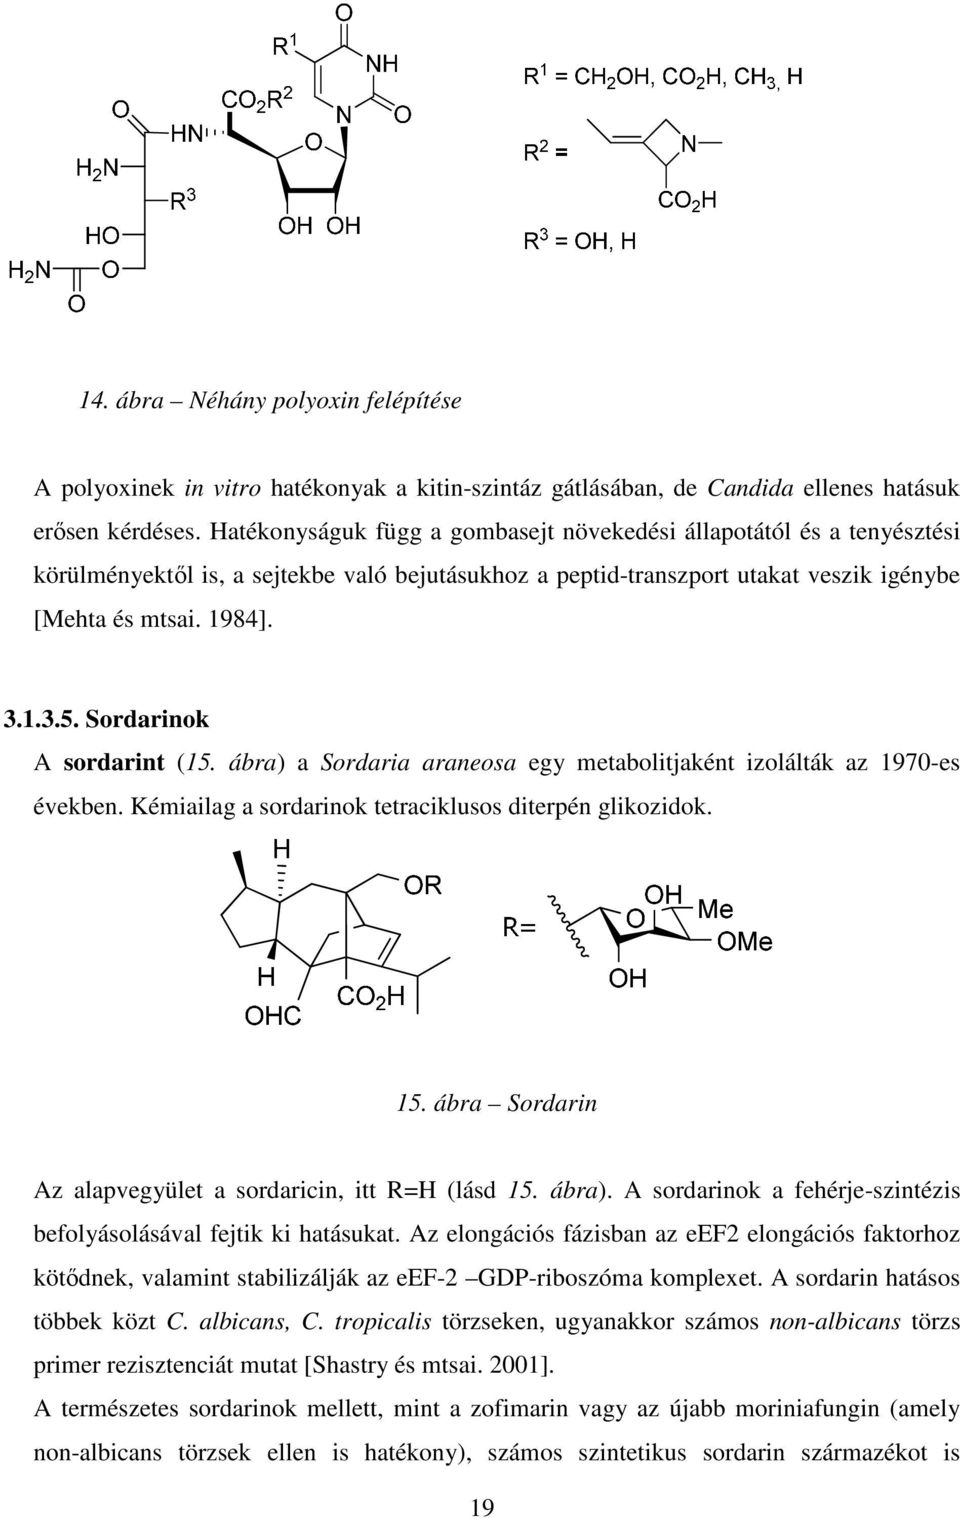 Sordarinok A sordarint (15. ábra) a Sordaria araneosa egy metabolitjaként izolálták az 1970-es években. Kémiailag a sordarinok tetraciklusos diterpén glikozidok. 15.